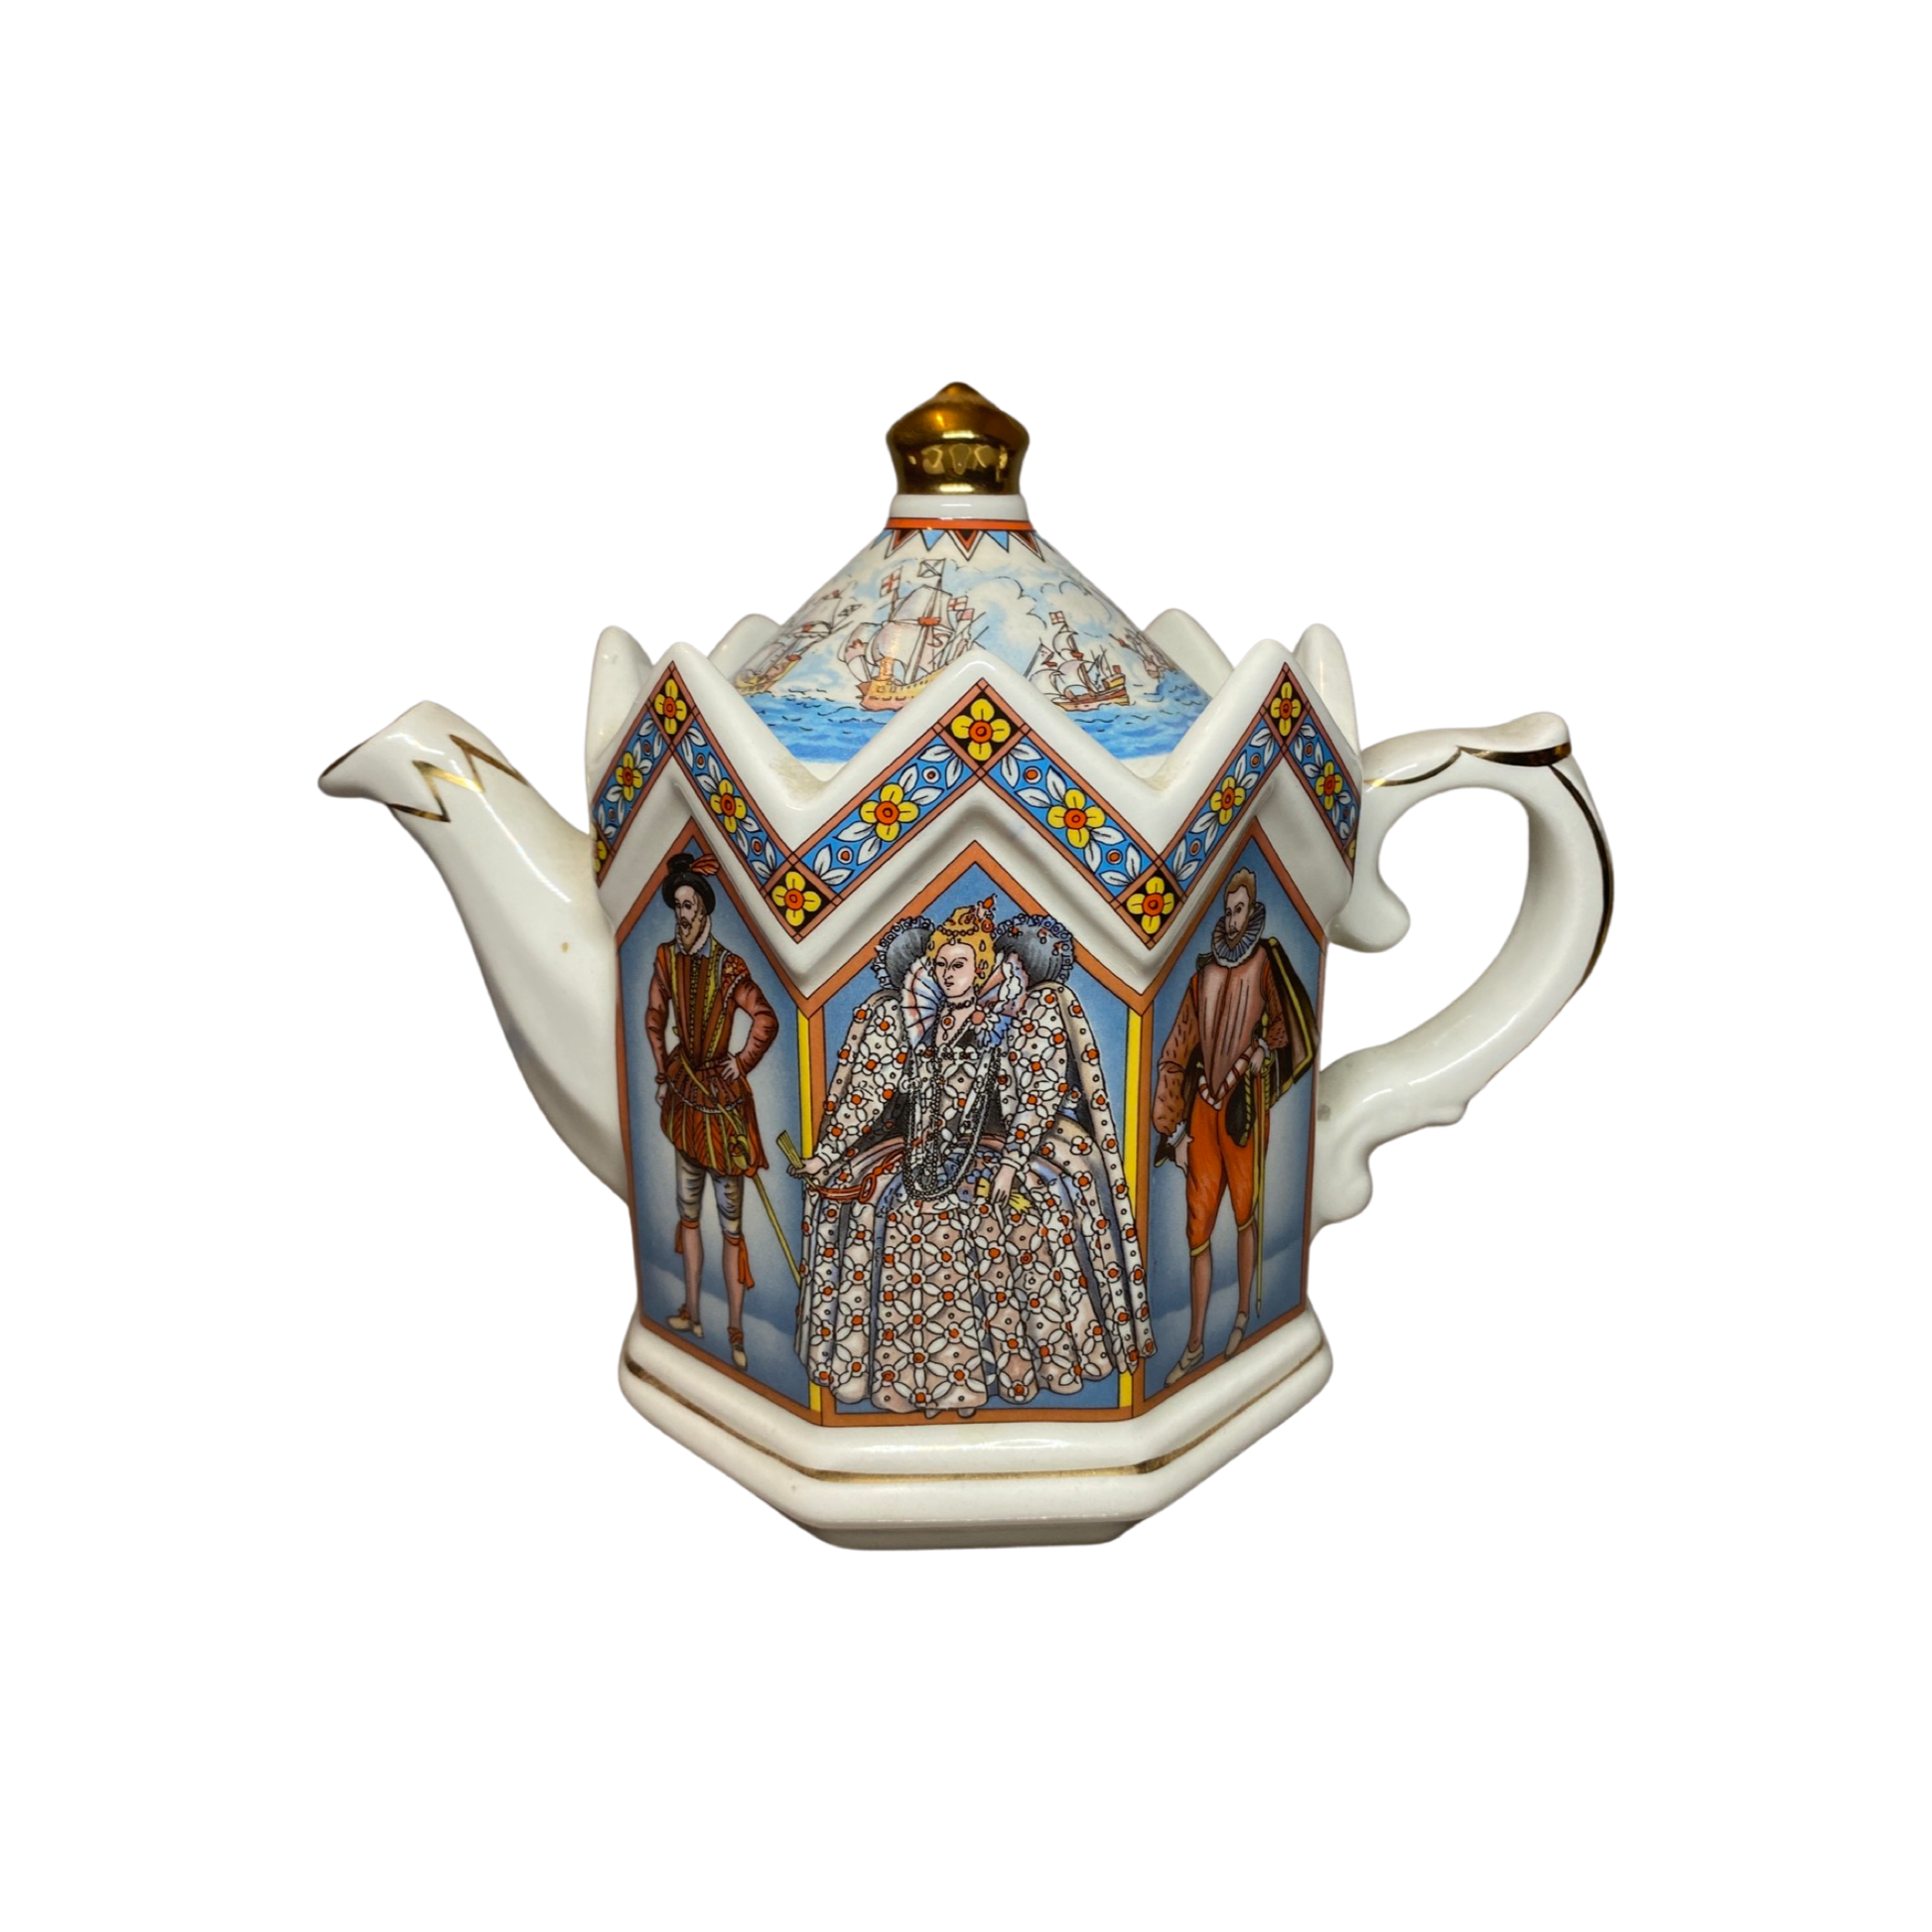 Sadler Minster Series - Elizabeth I Queen Of England - Teapot